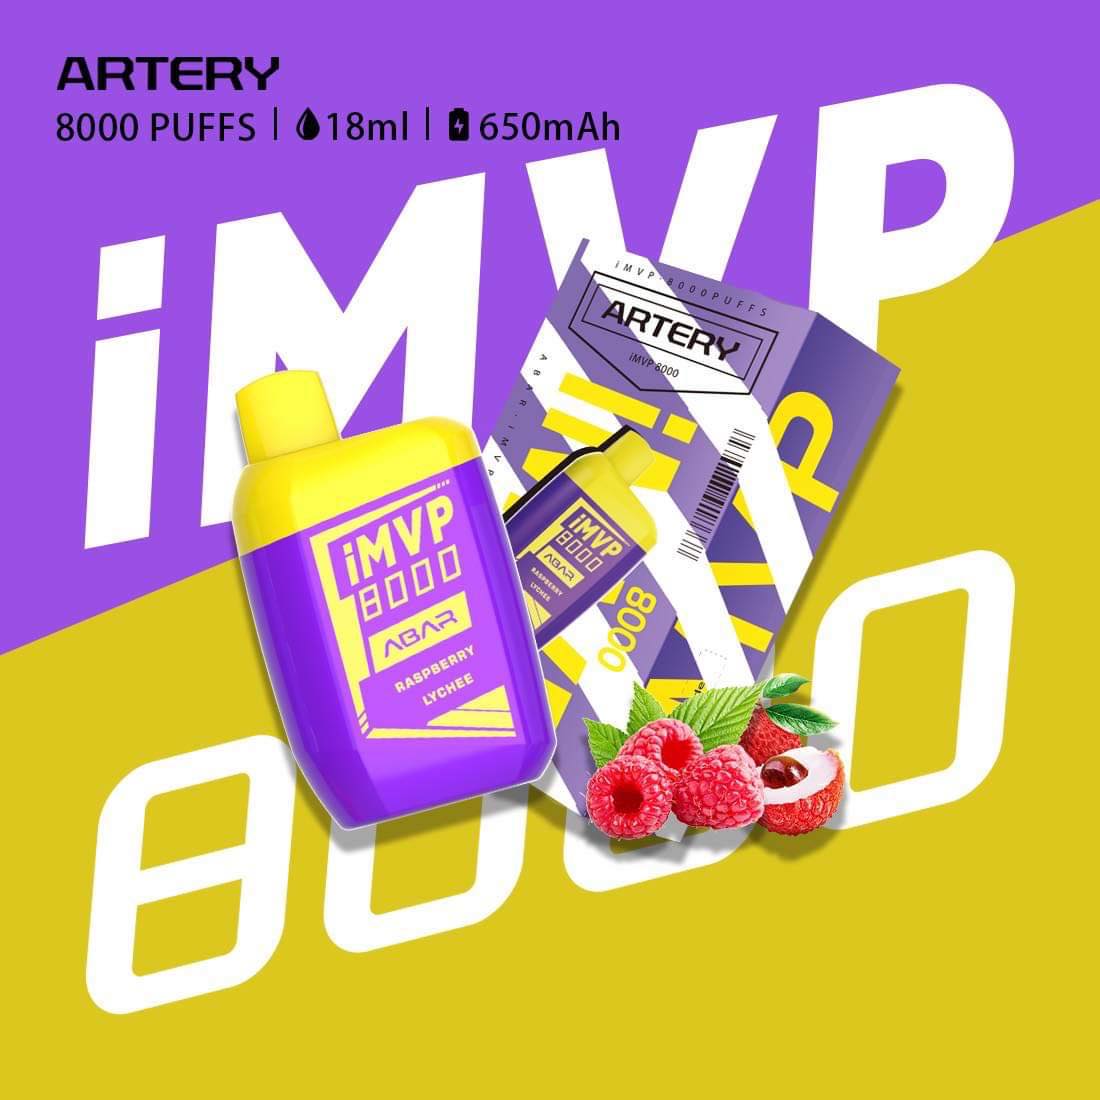 Artery iMVP 8000 Puffs - 5 